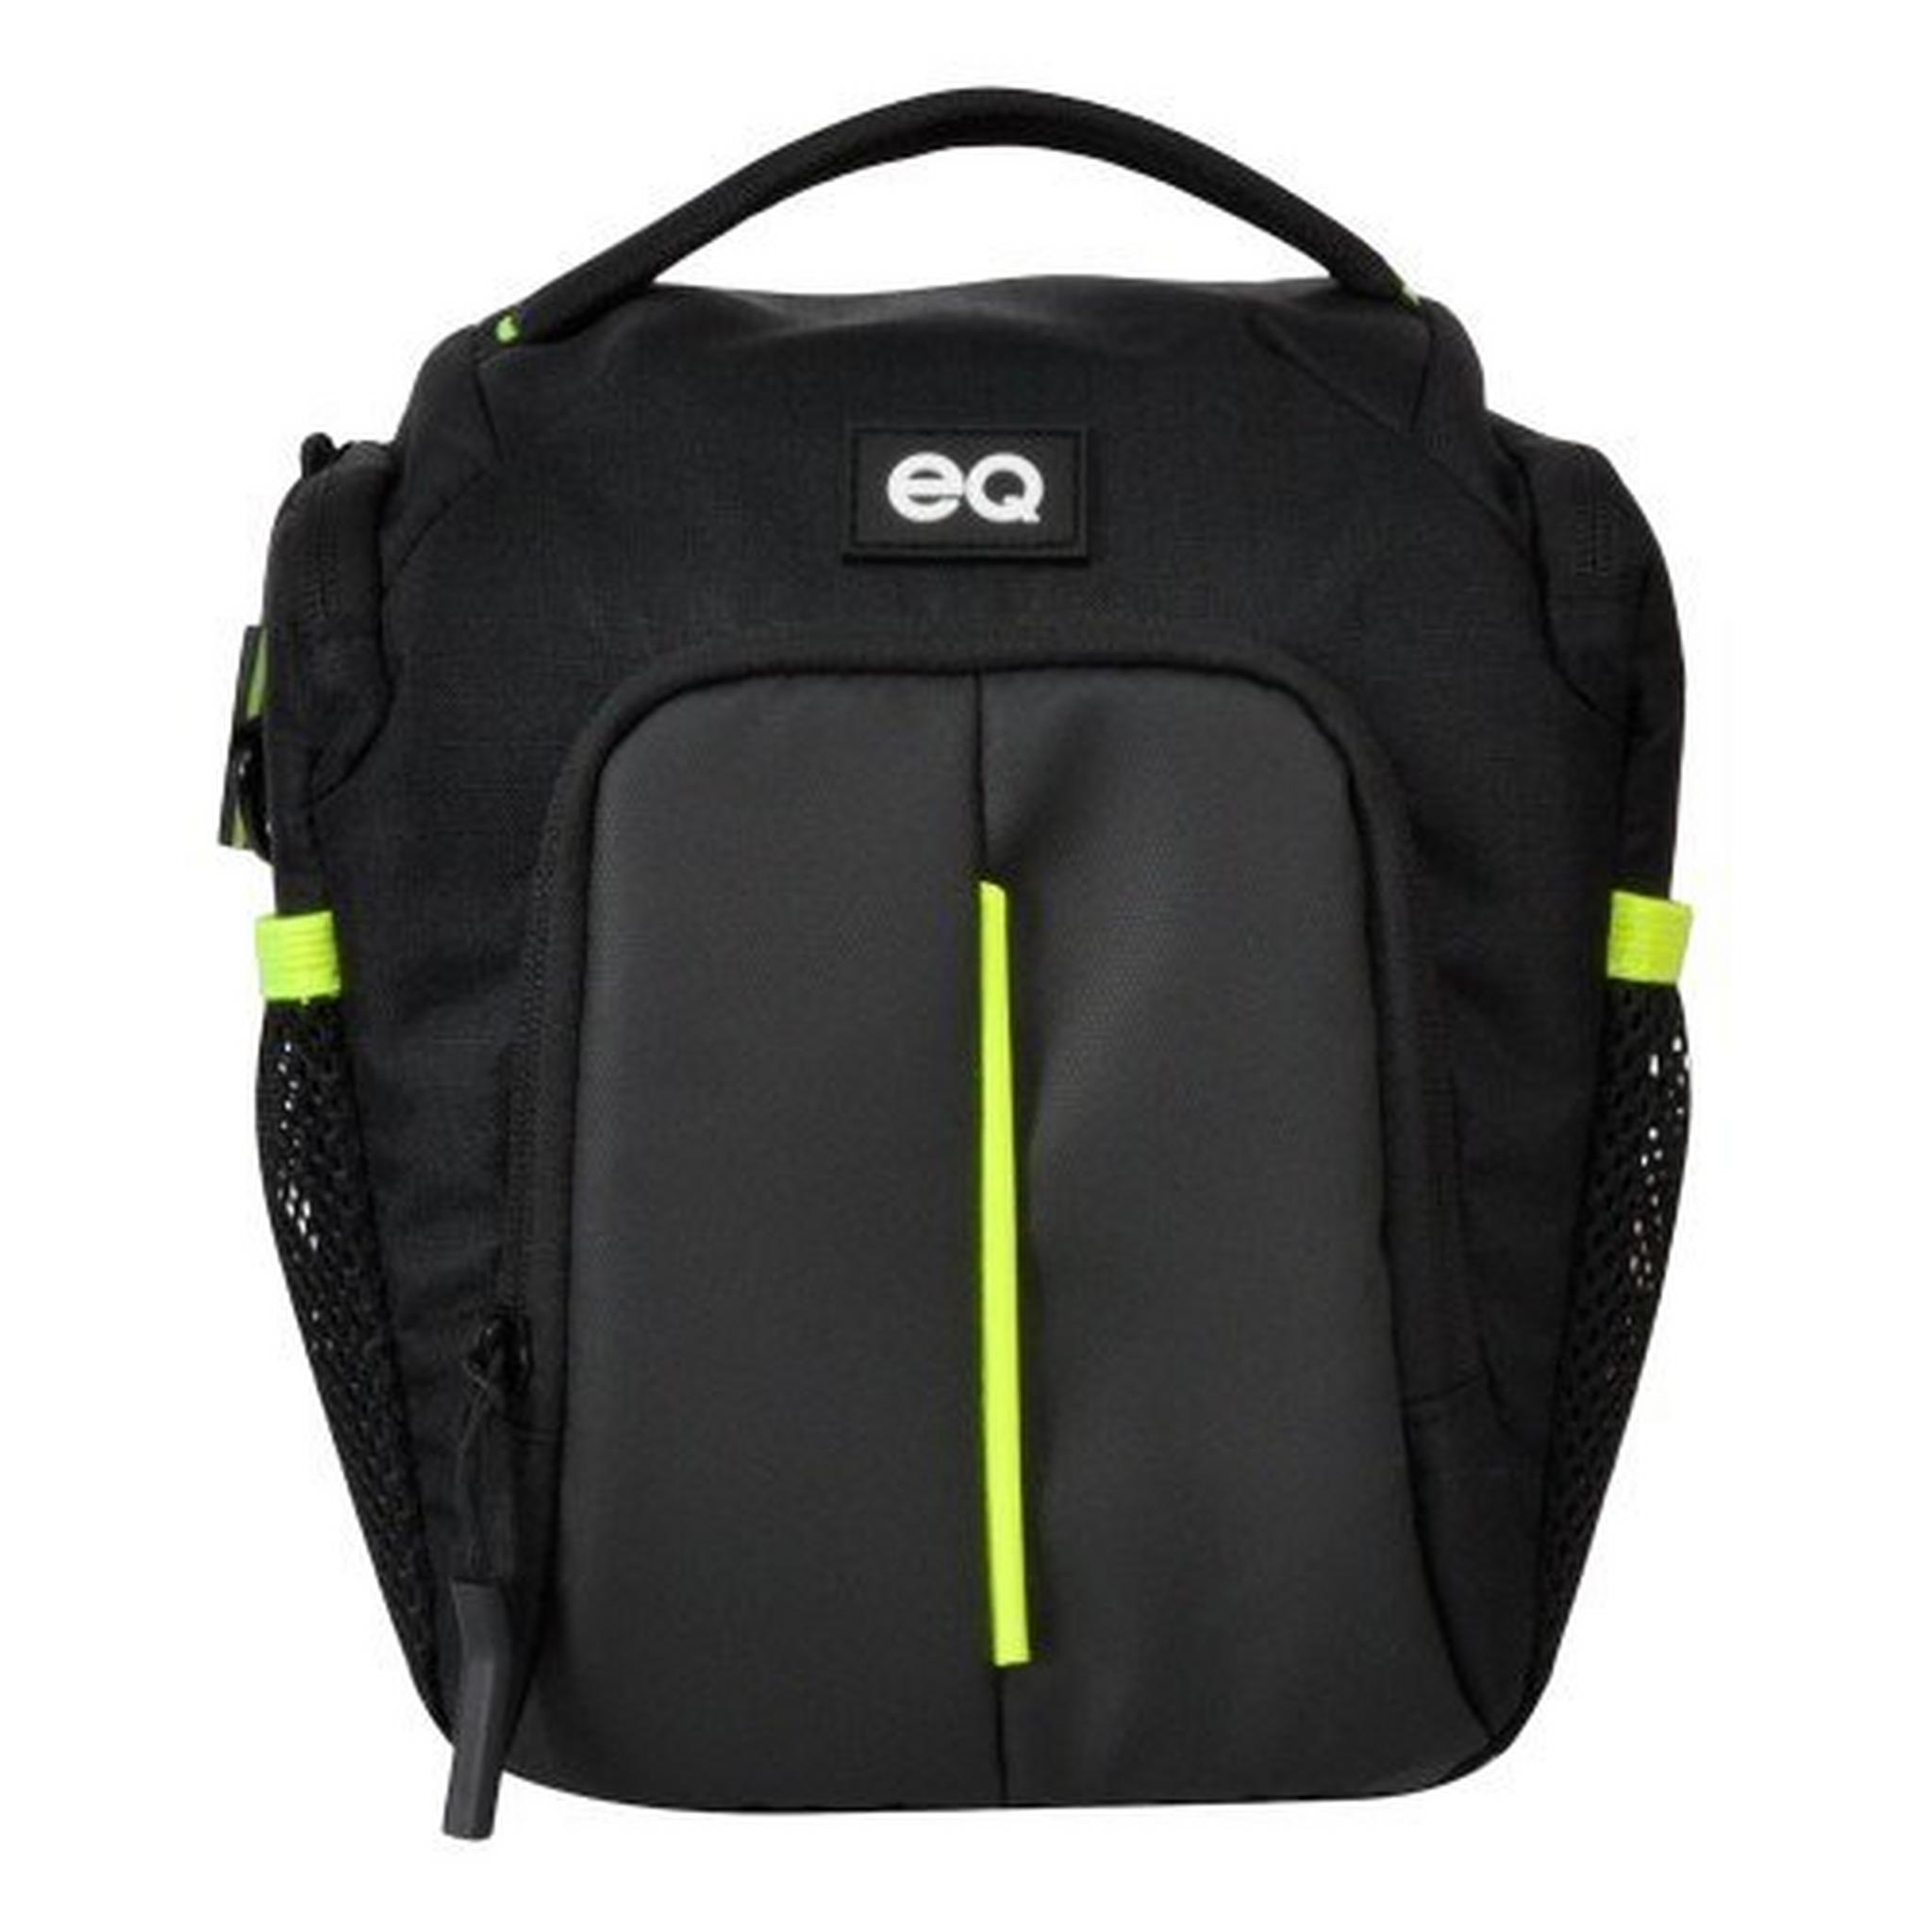 EQ DSLR Camera Shoulder Bag, ECB013310BS – Black